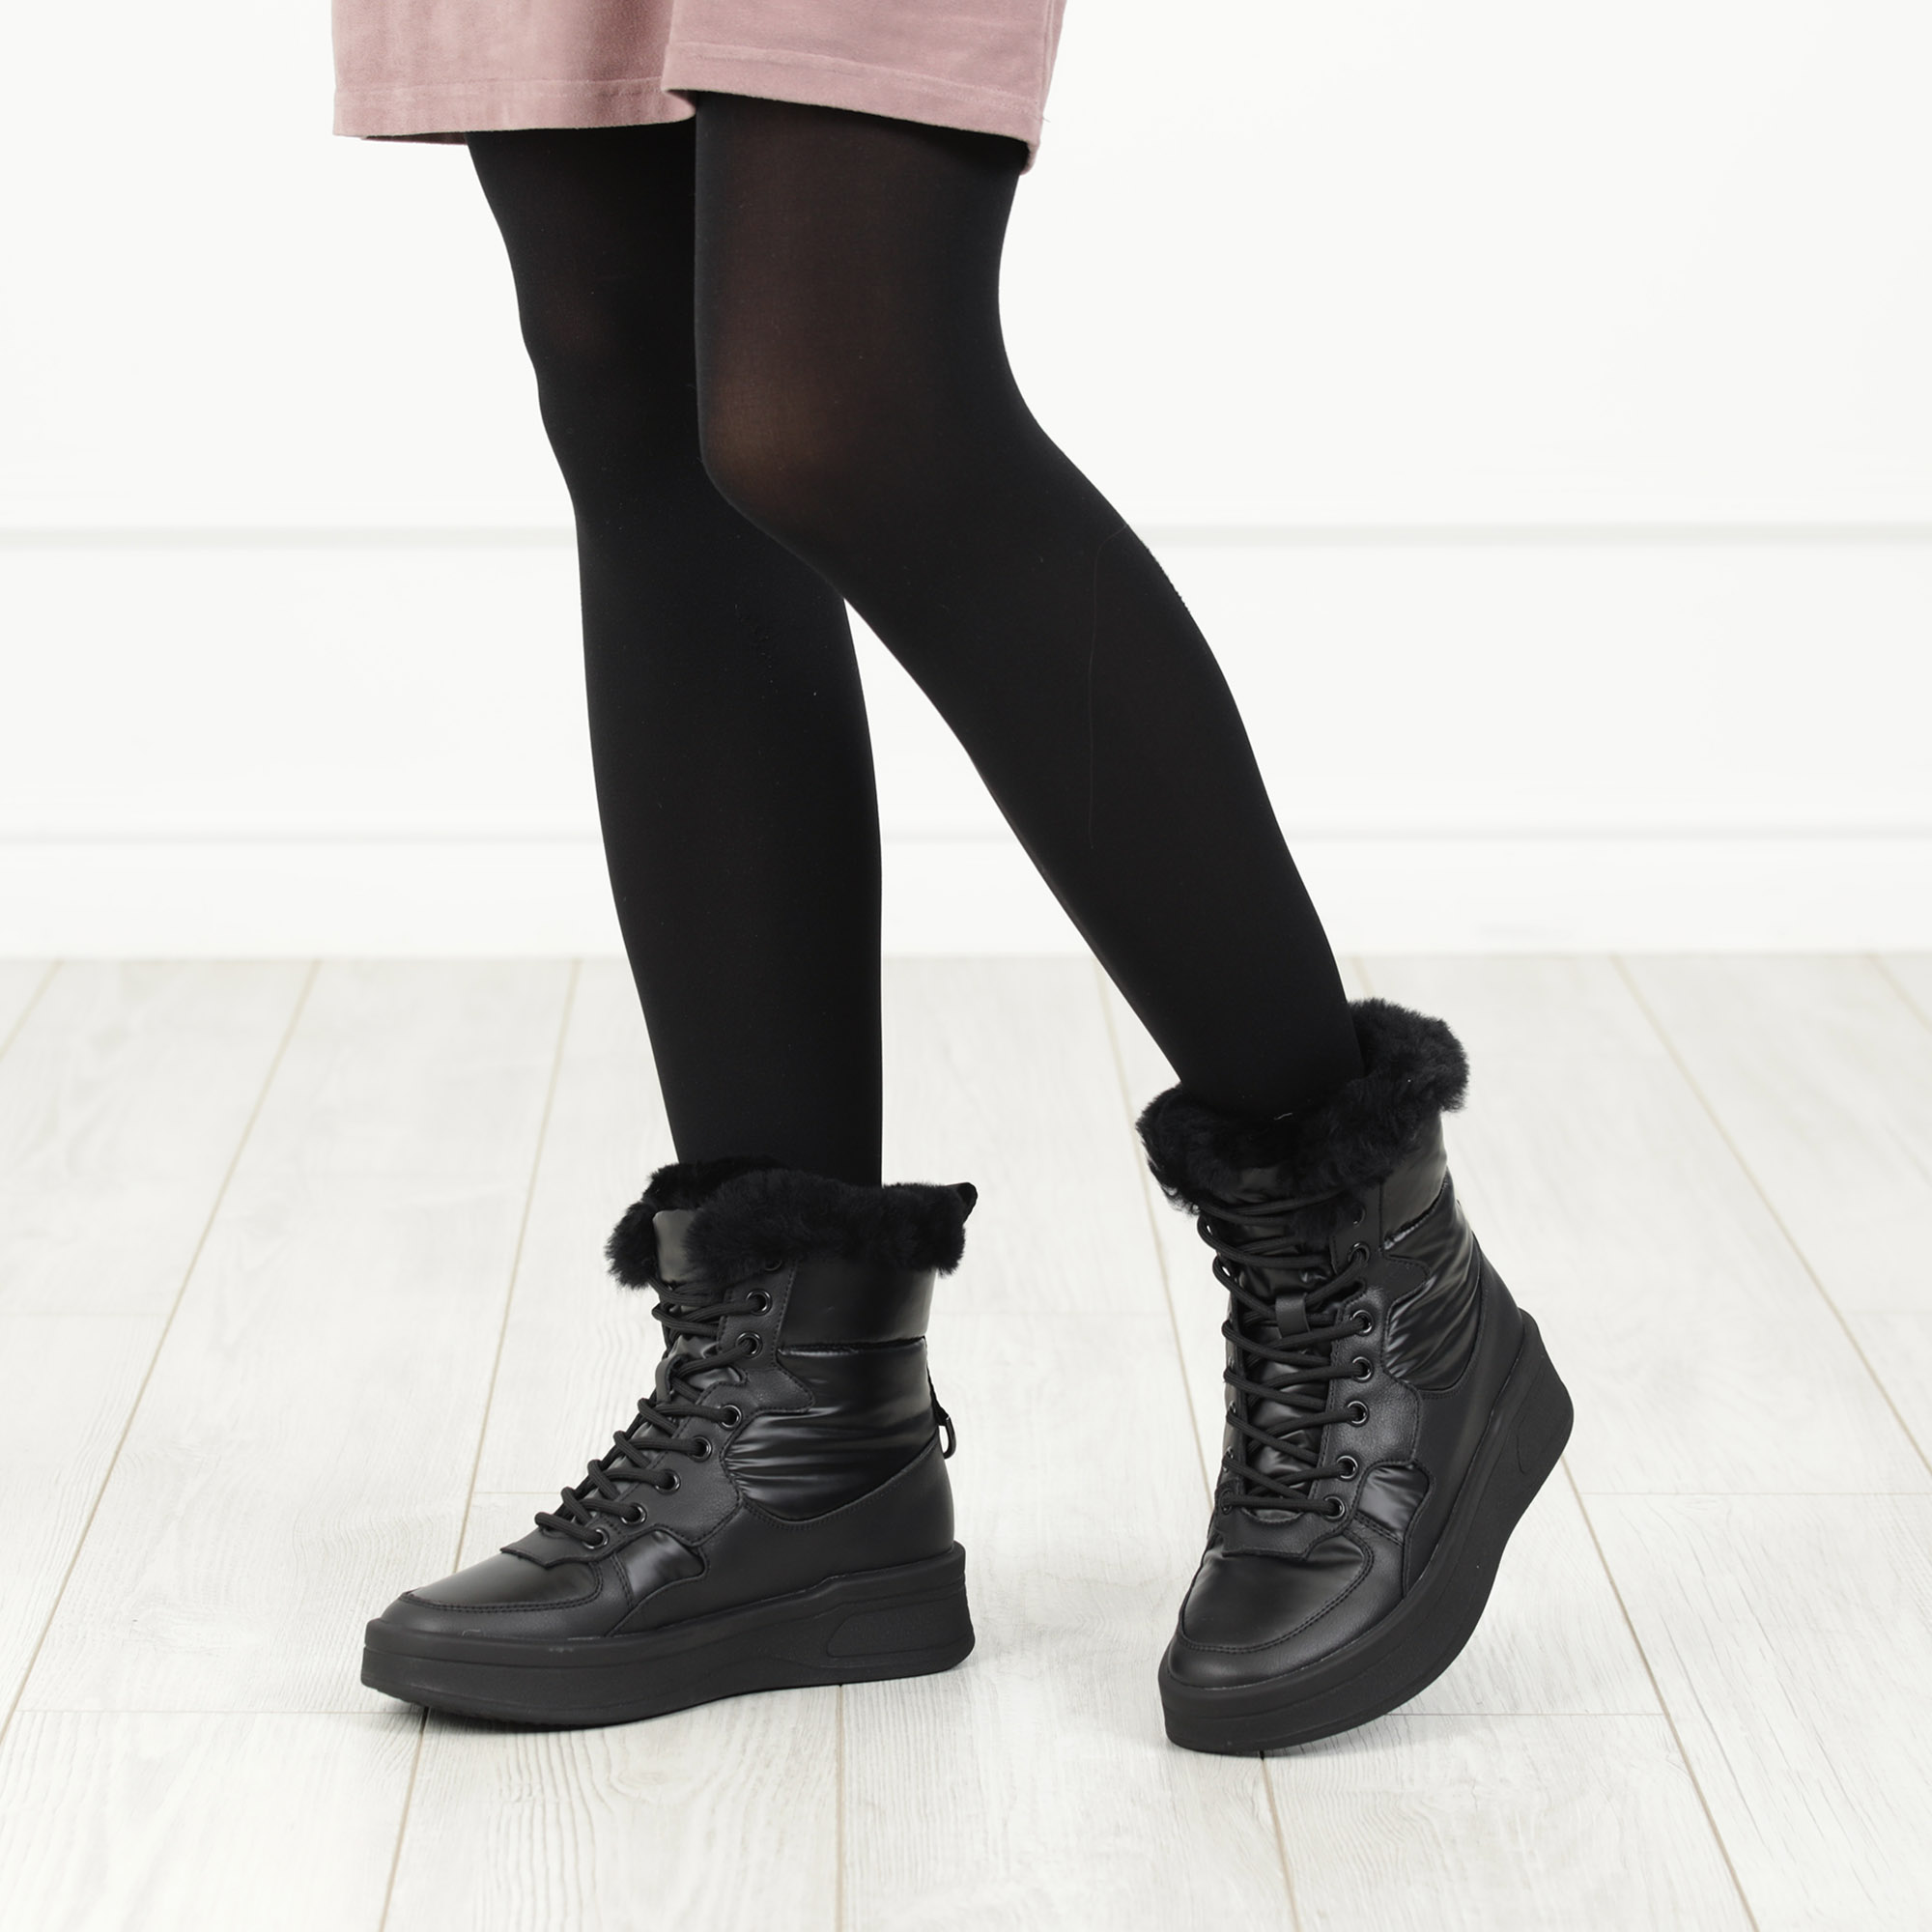 Черные высокие кроссовки из комбинированных материалов смеховой опушкой на подкладке из натуральной шерсти на утолщенной платформе Respect, размер 40, цвет черный - фото 2